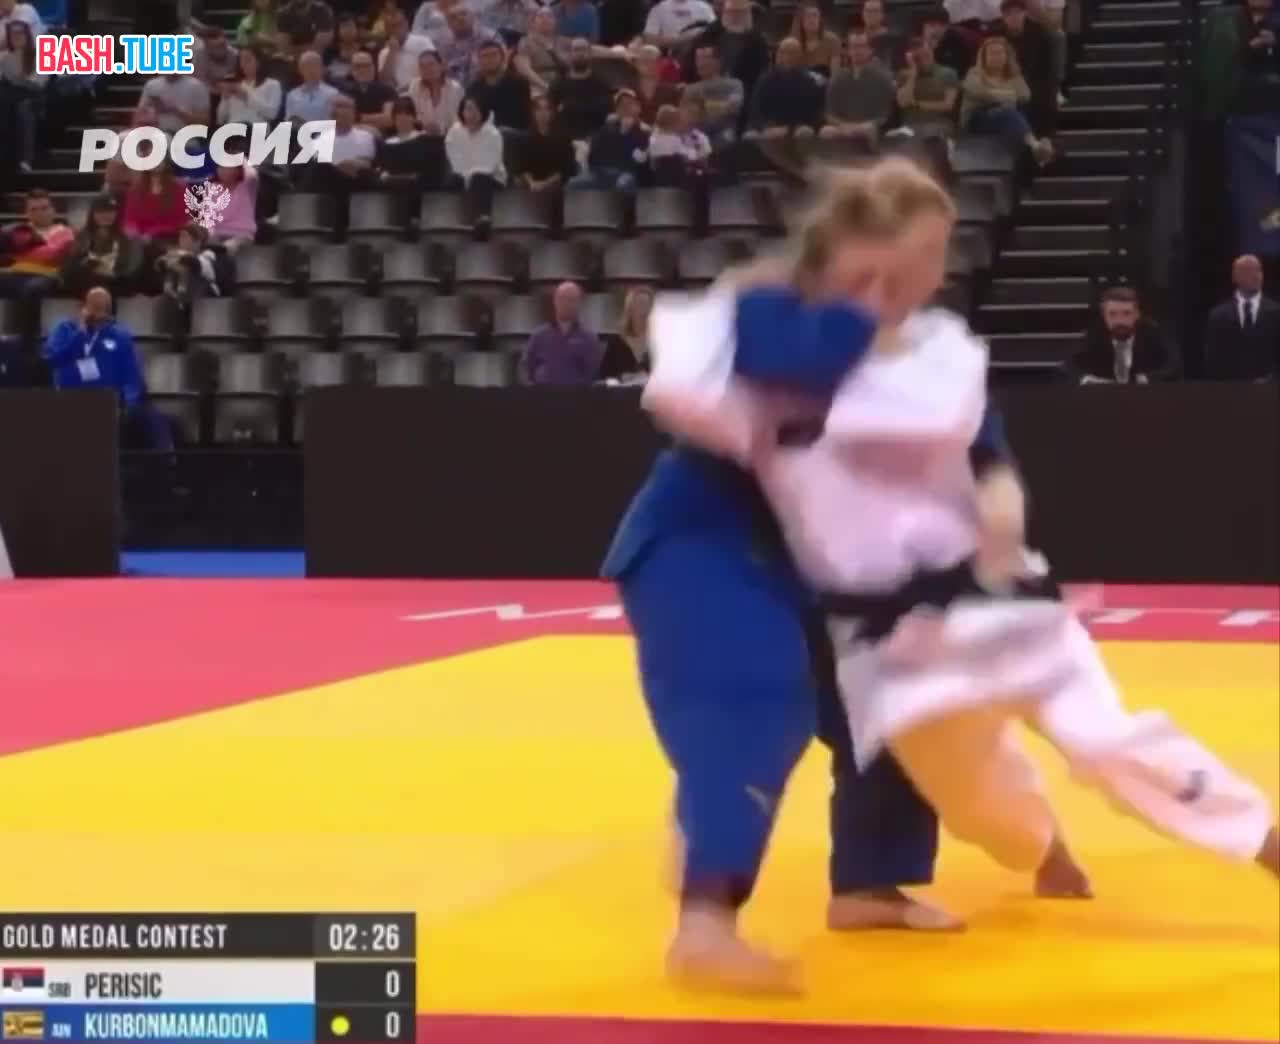  Российская дзюдоистка Дарья Курбонмамадова завоевала золотую медаль на чемпионате Европы